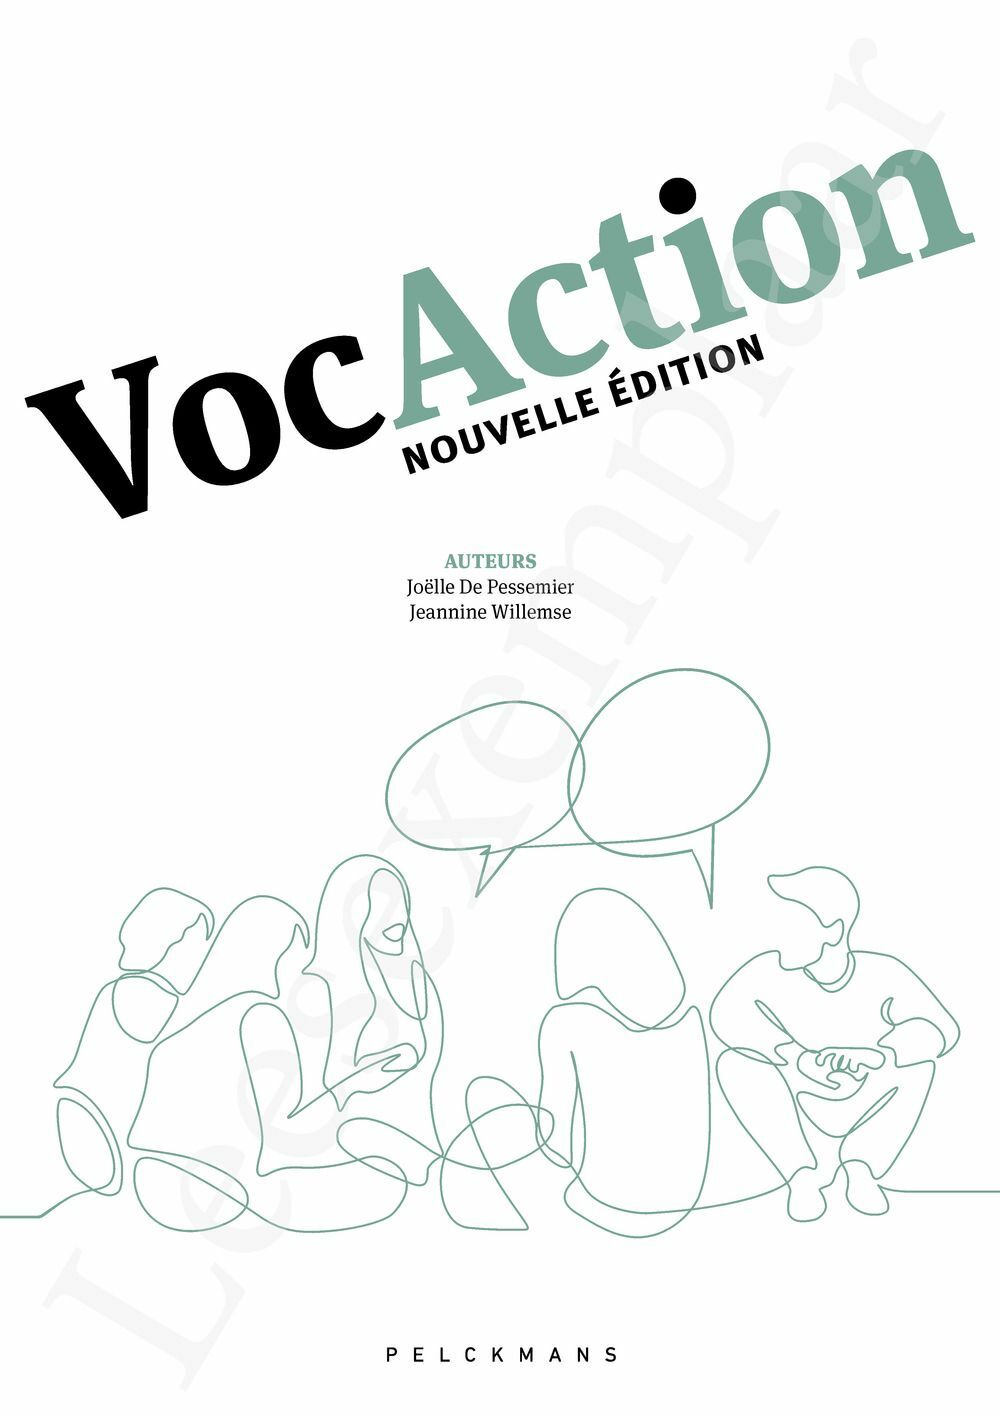 Preview: VocAction Nouvelle édition (incl. Pelckmans Portaal)